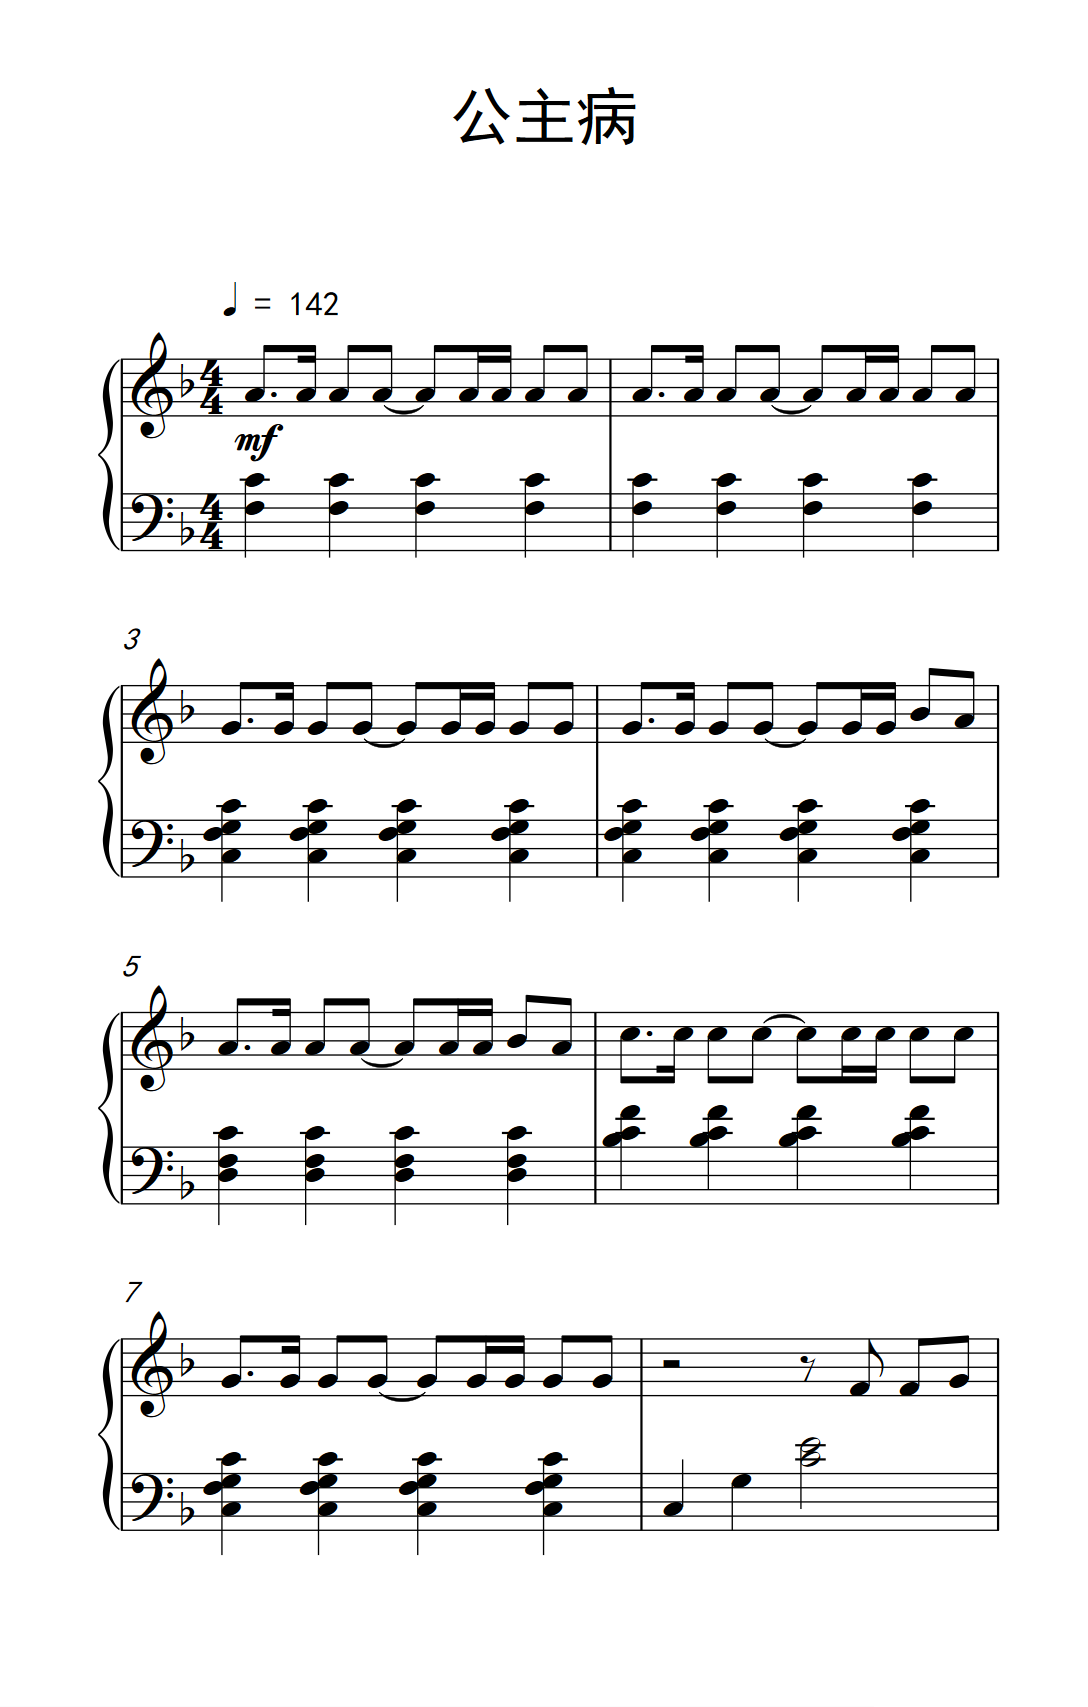 《菲菲》简单钢琴谱 - 沈以诚左手右手慢速版 - 简易入门版 - 钢琴简谱